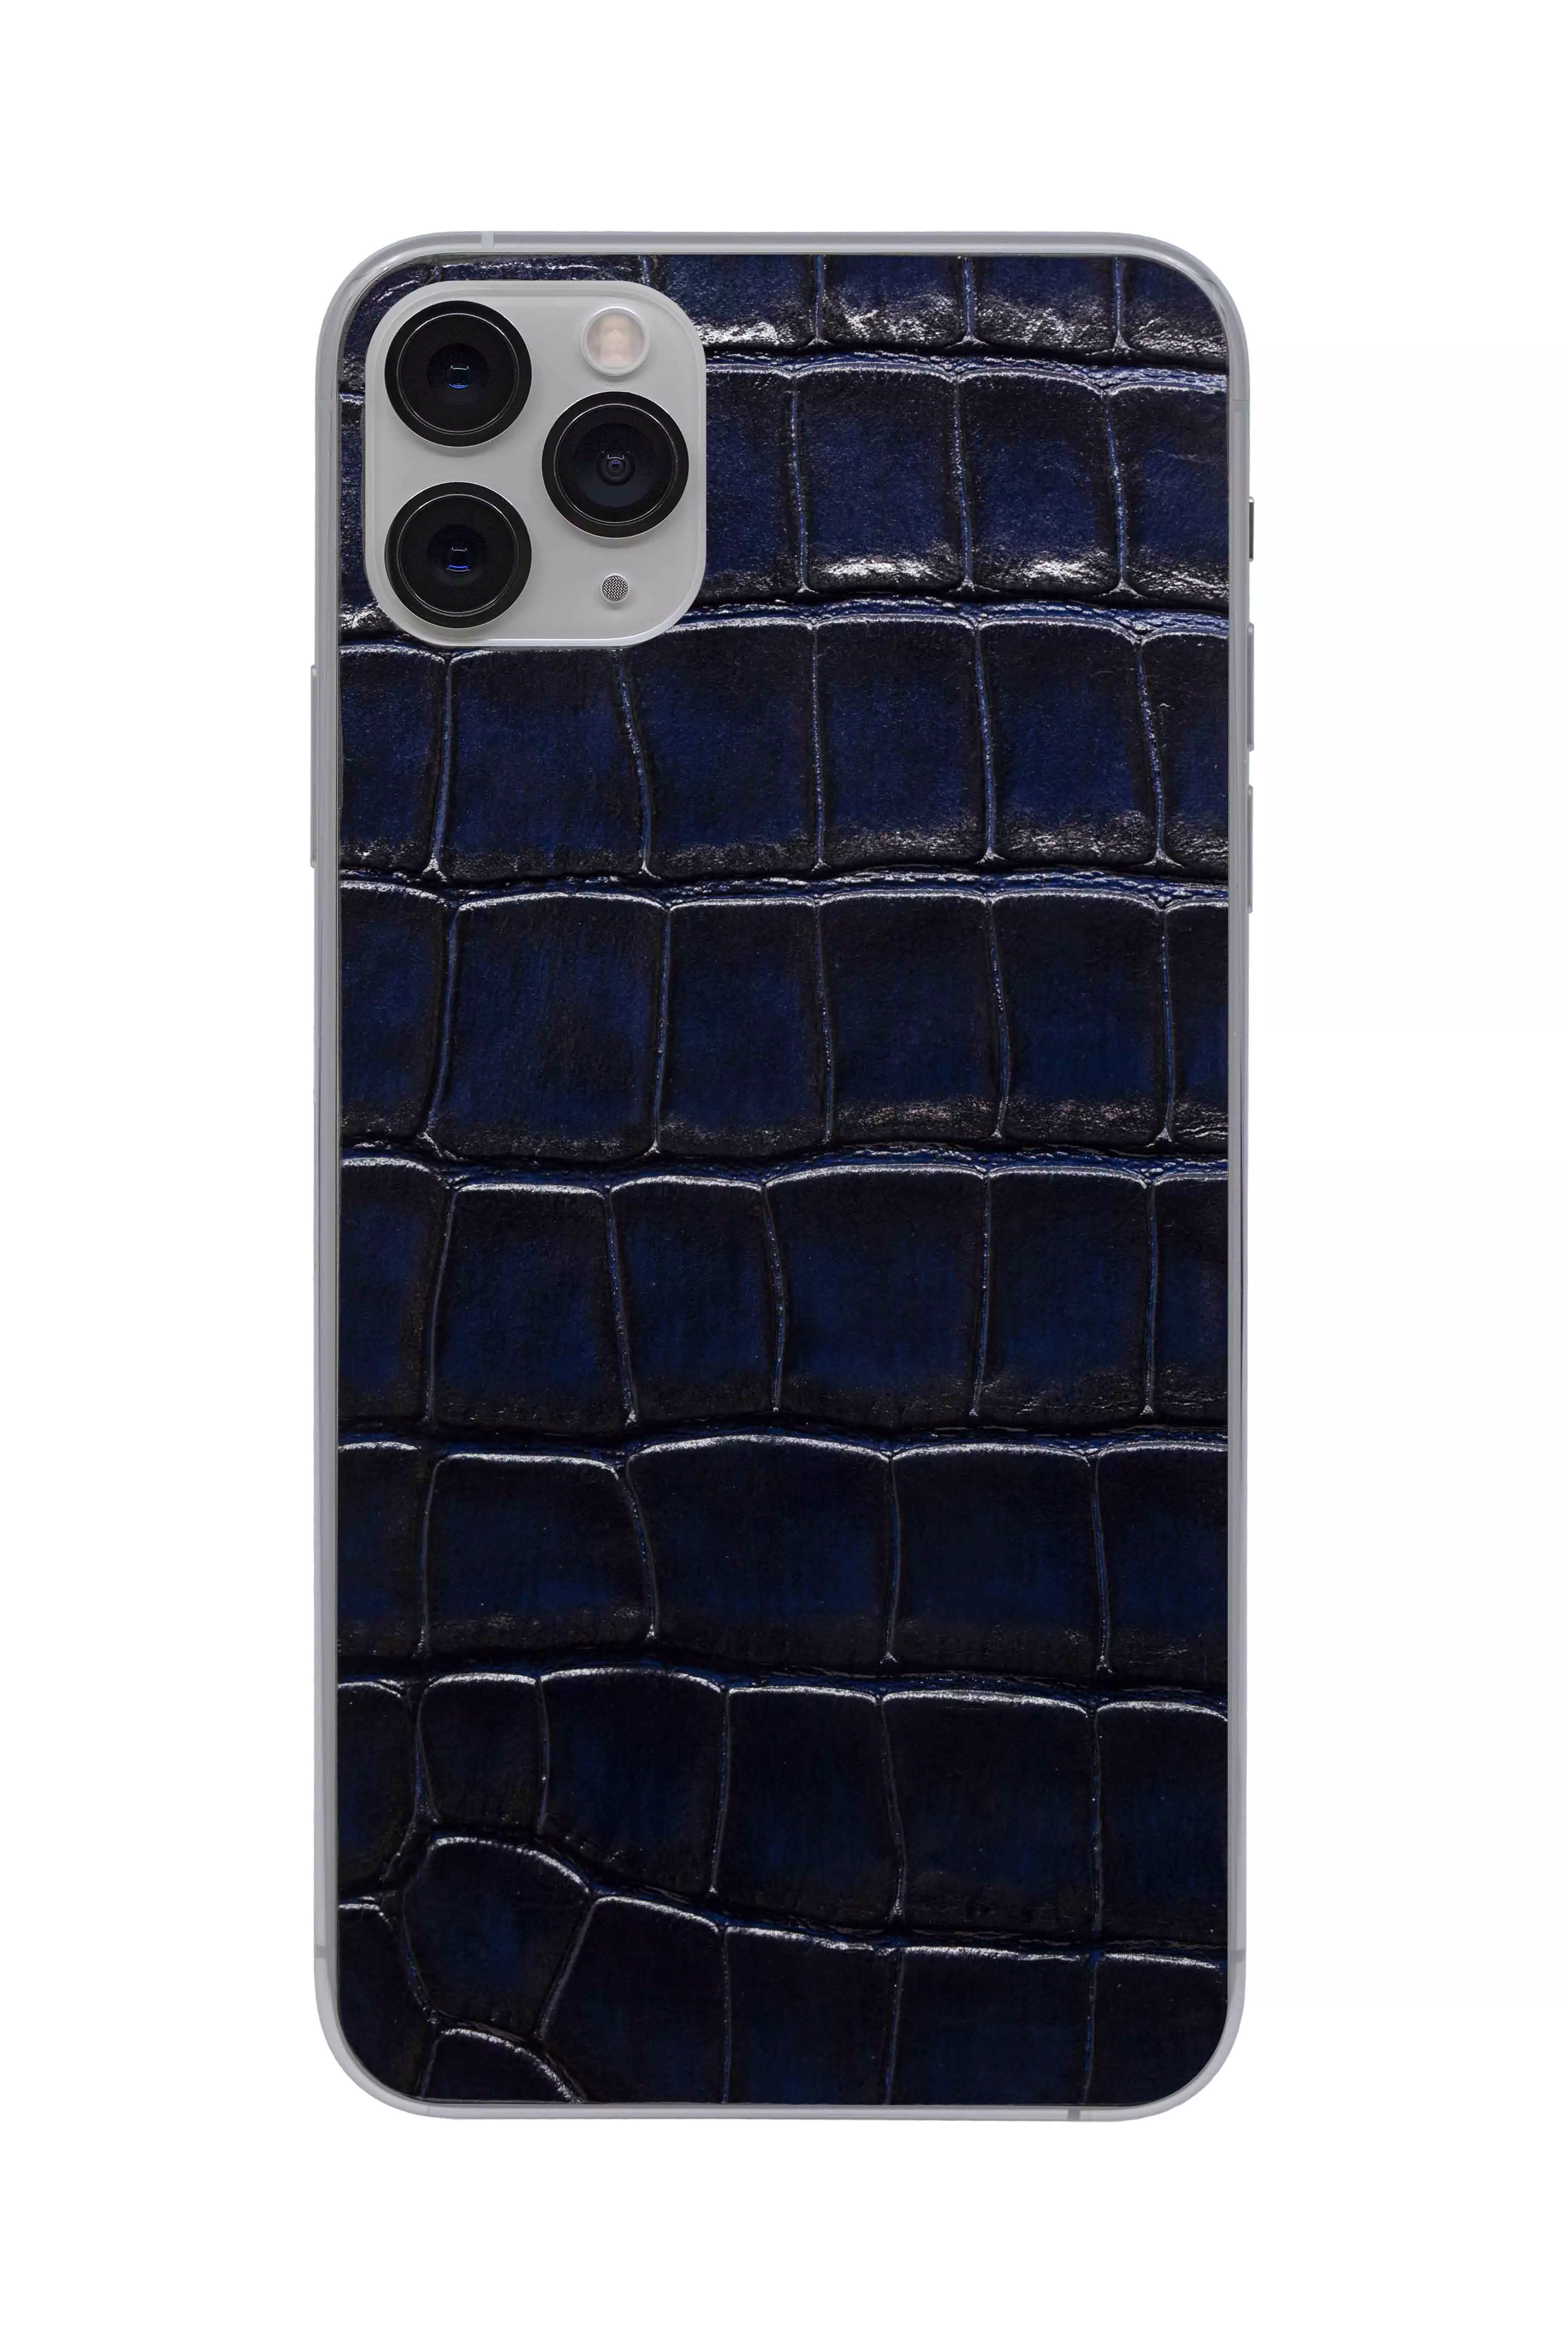 Защитная наклейка из натуральной кожи для iPhone 11 Pro Max, Вид Темно-синий. Вид 1